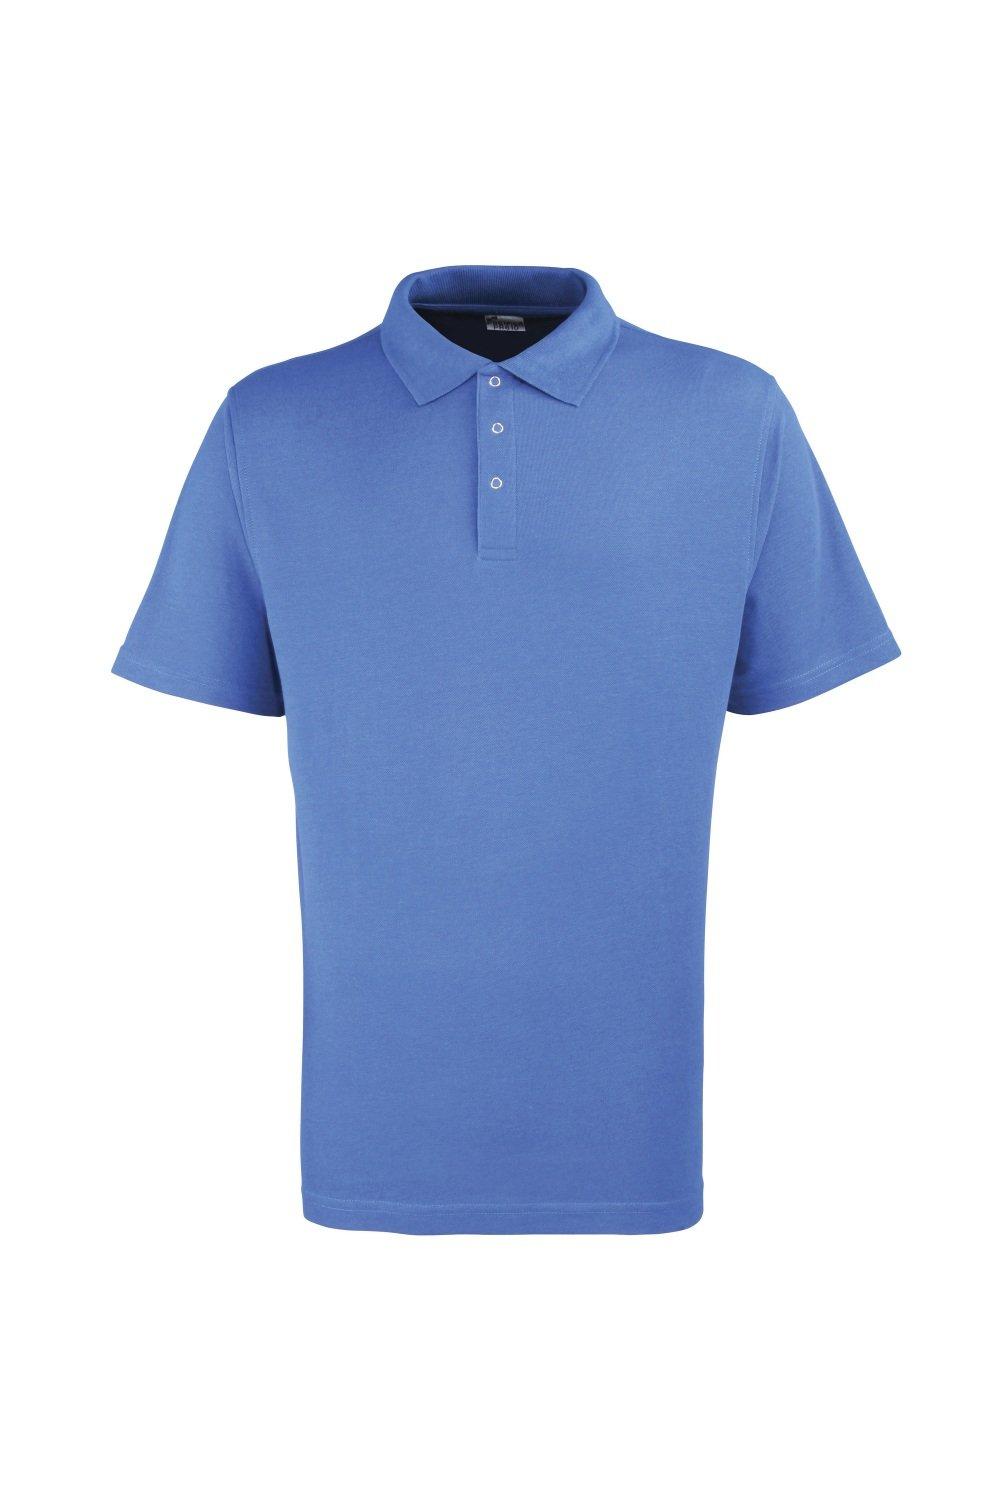 Однотонная рубашка-поло из тяжелого пике с заклепками Premier, синий рубашка sol s размер 3xl голубой